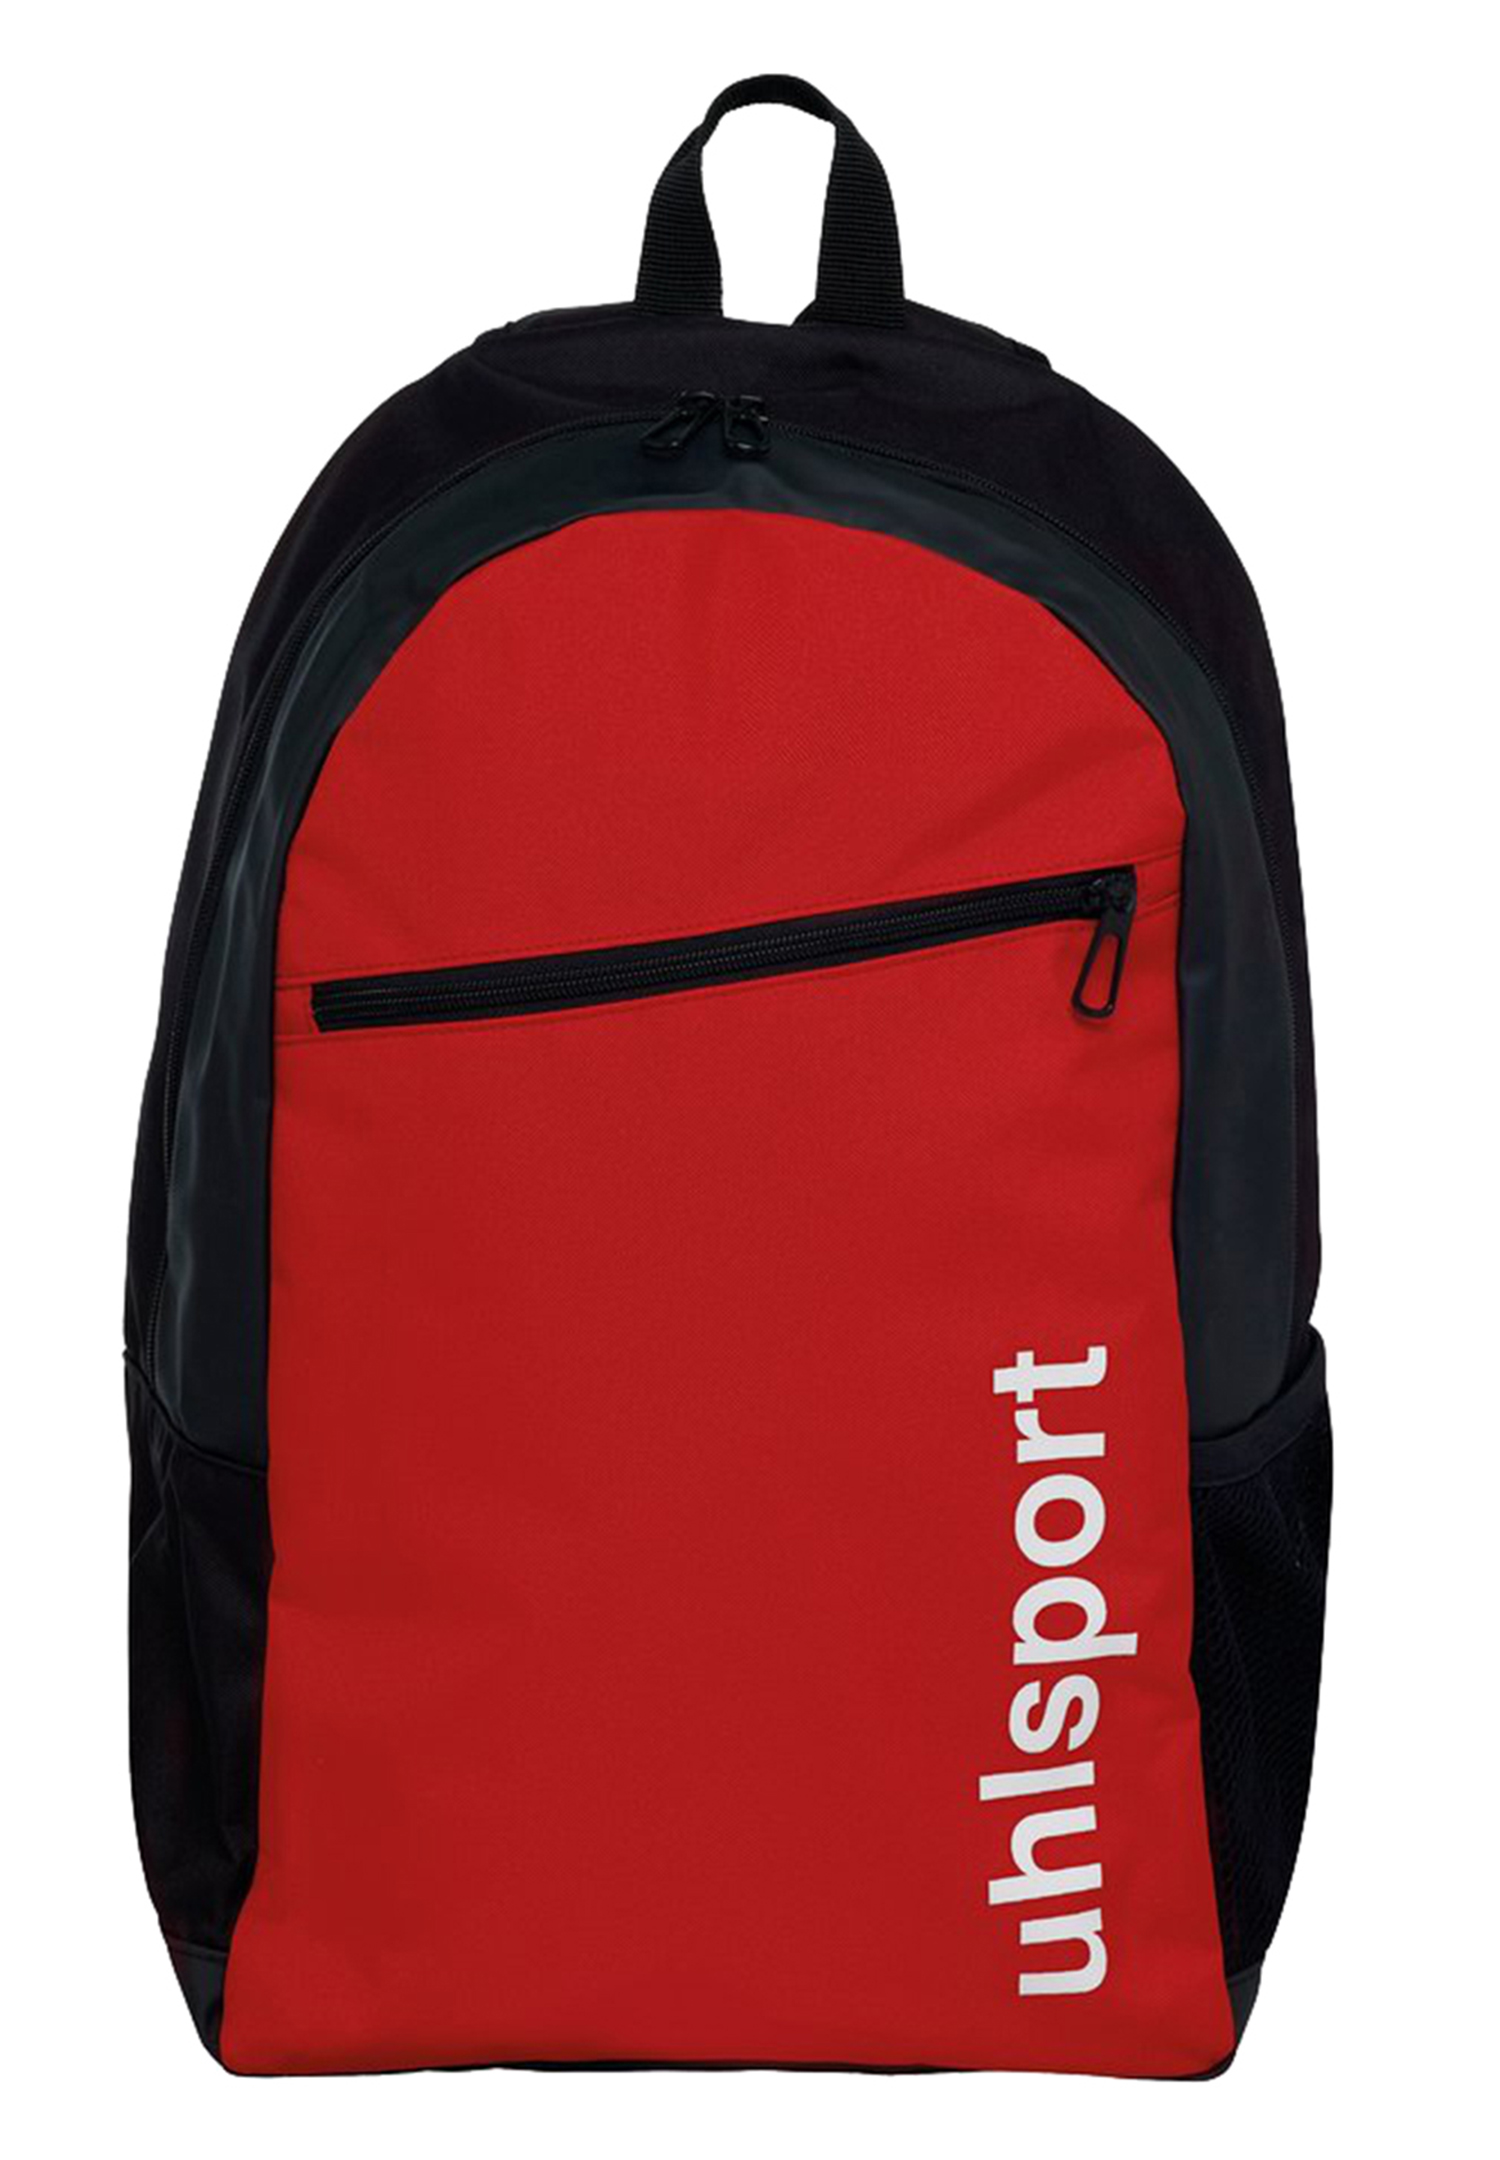 Uhlsport Essential Backpack 20L Rucksack 100428802 Rot 